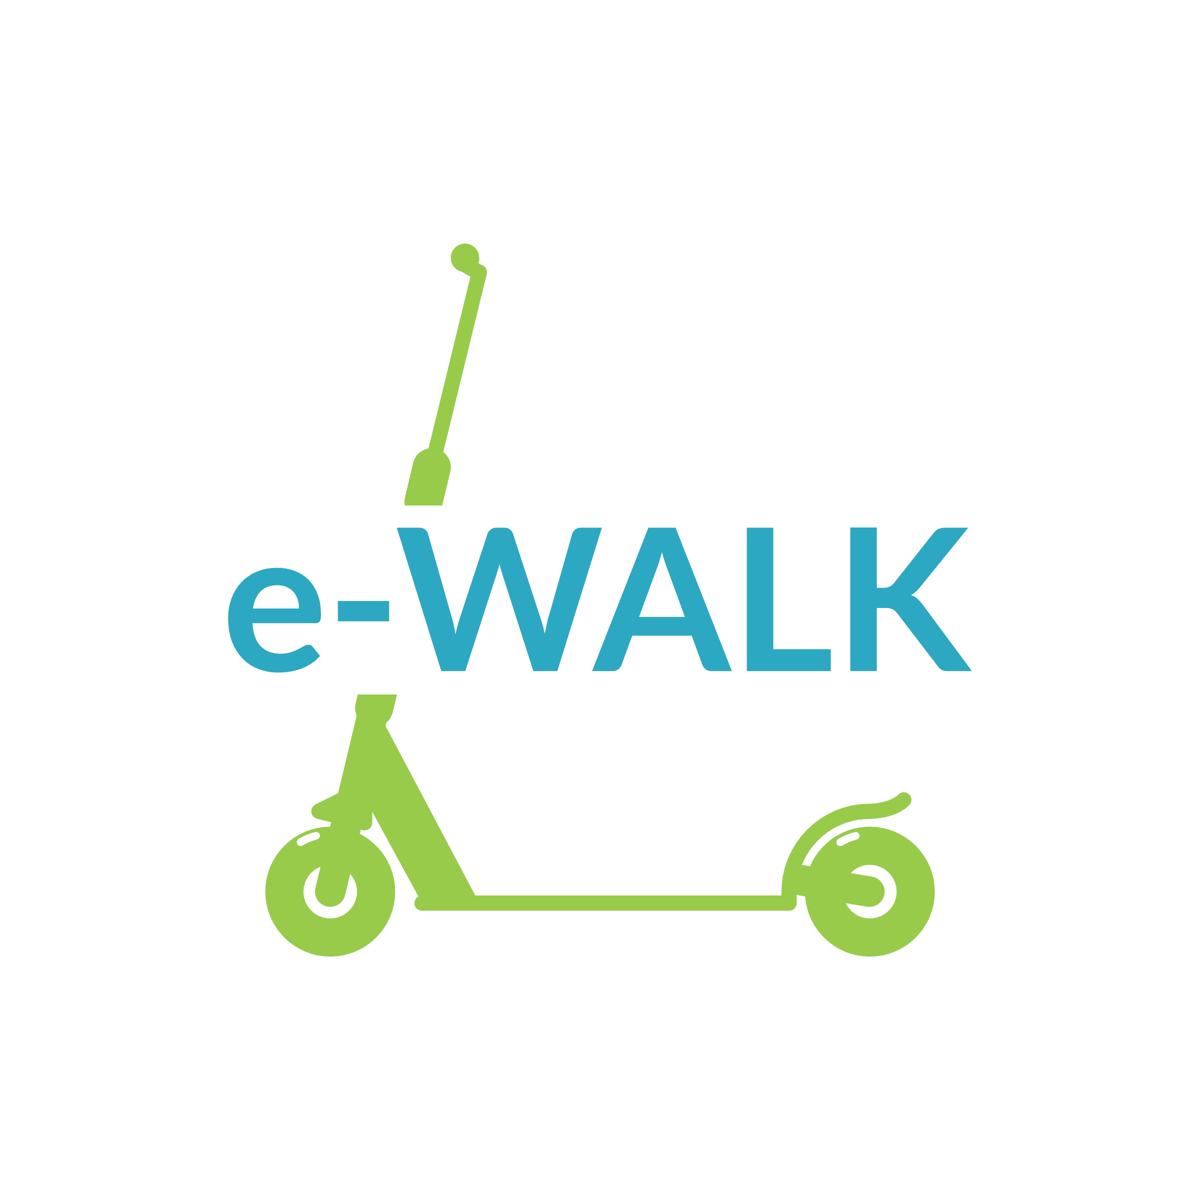 e-WALK 